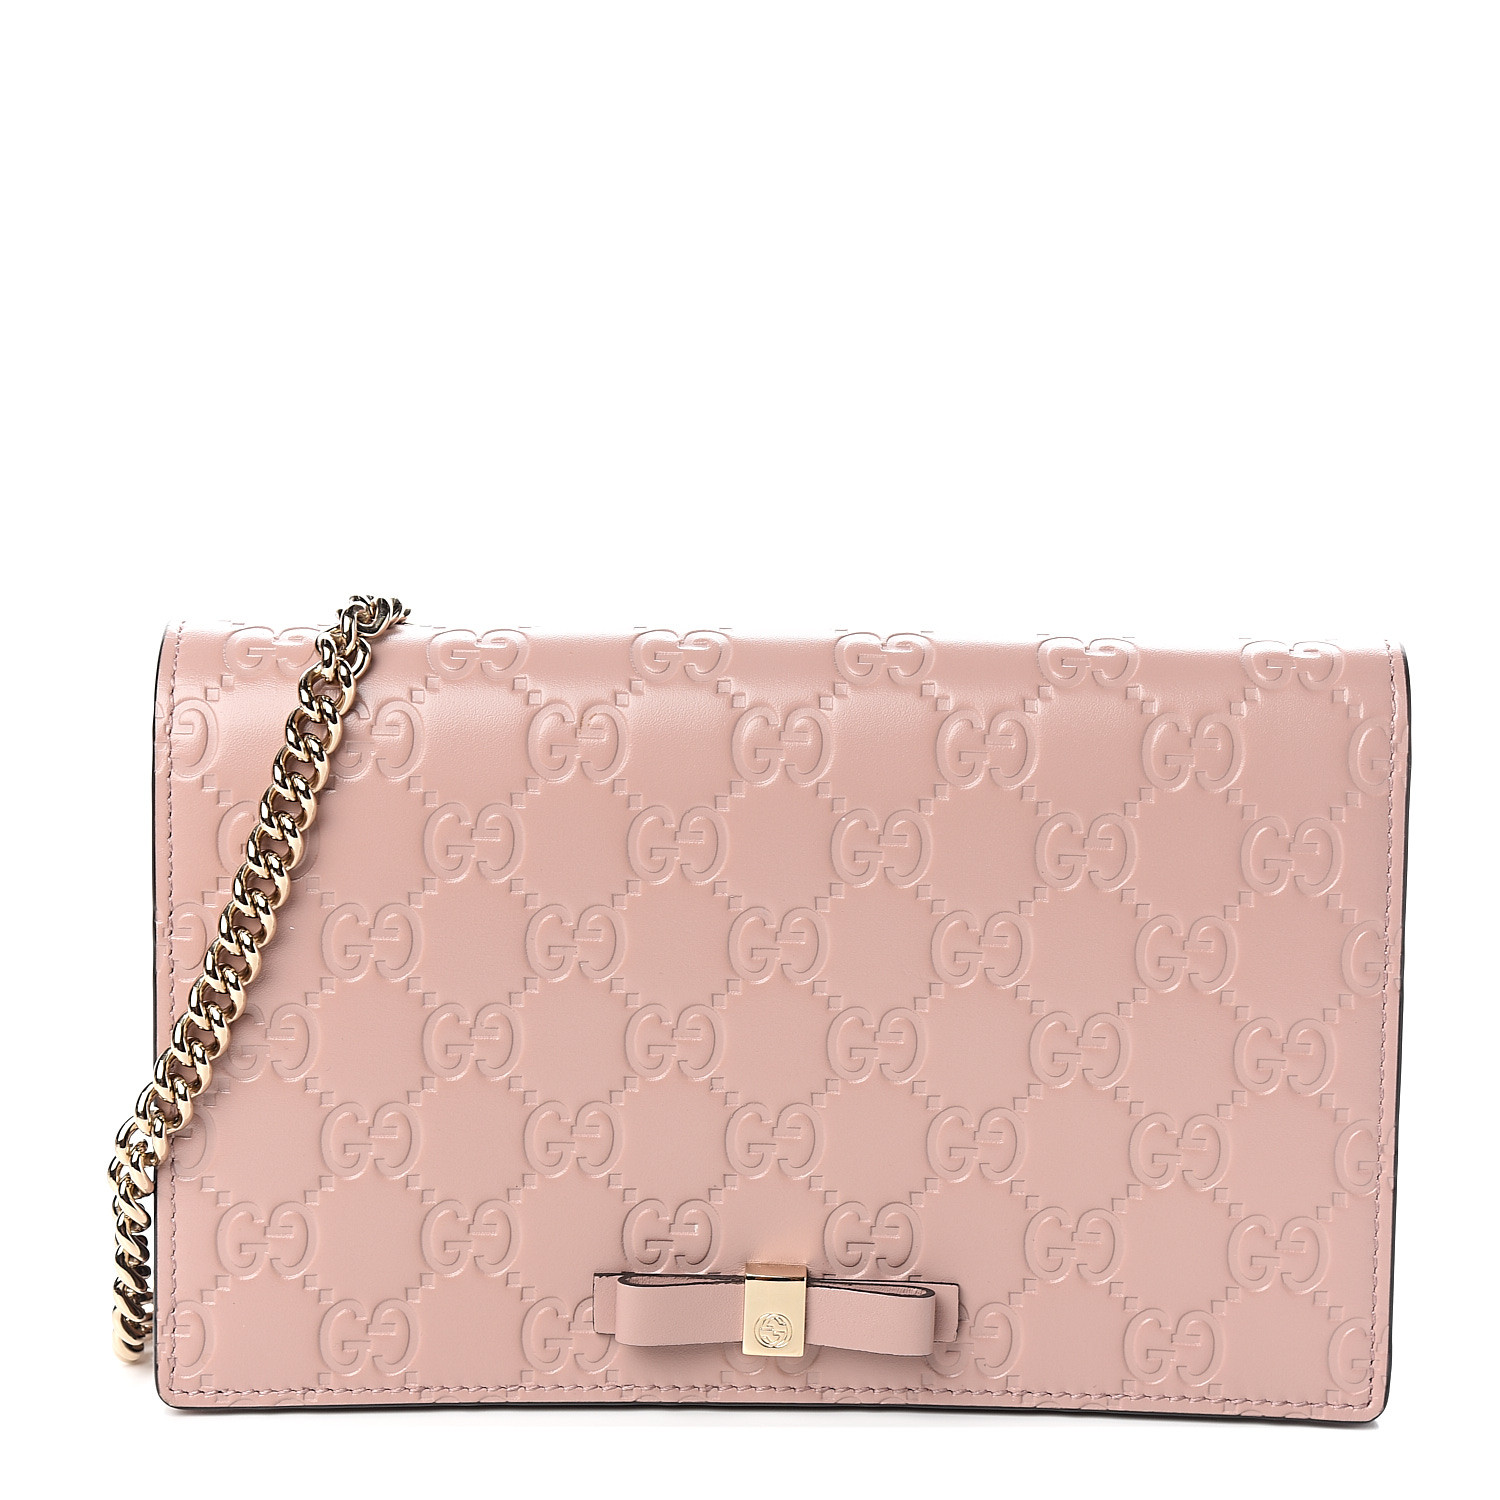 gucci signature mini bag pink